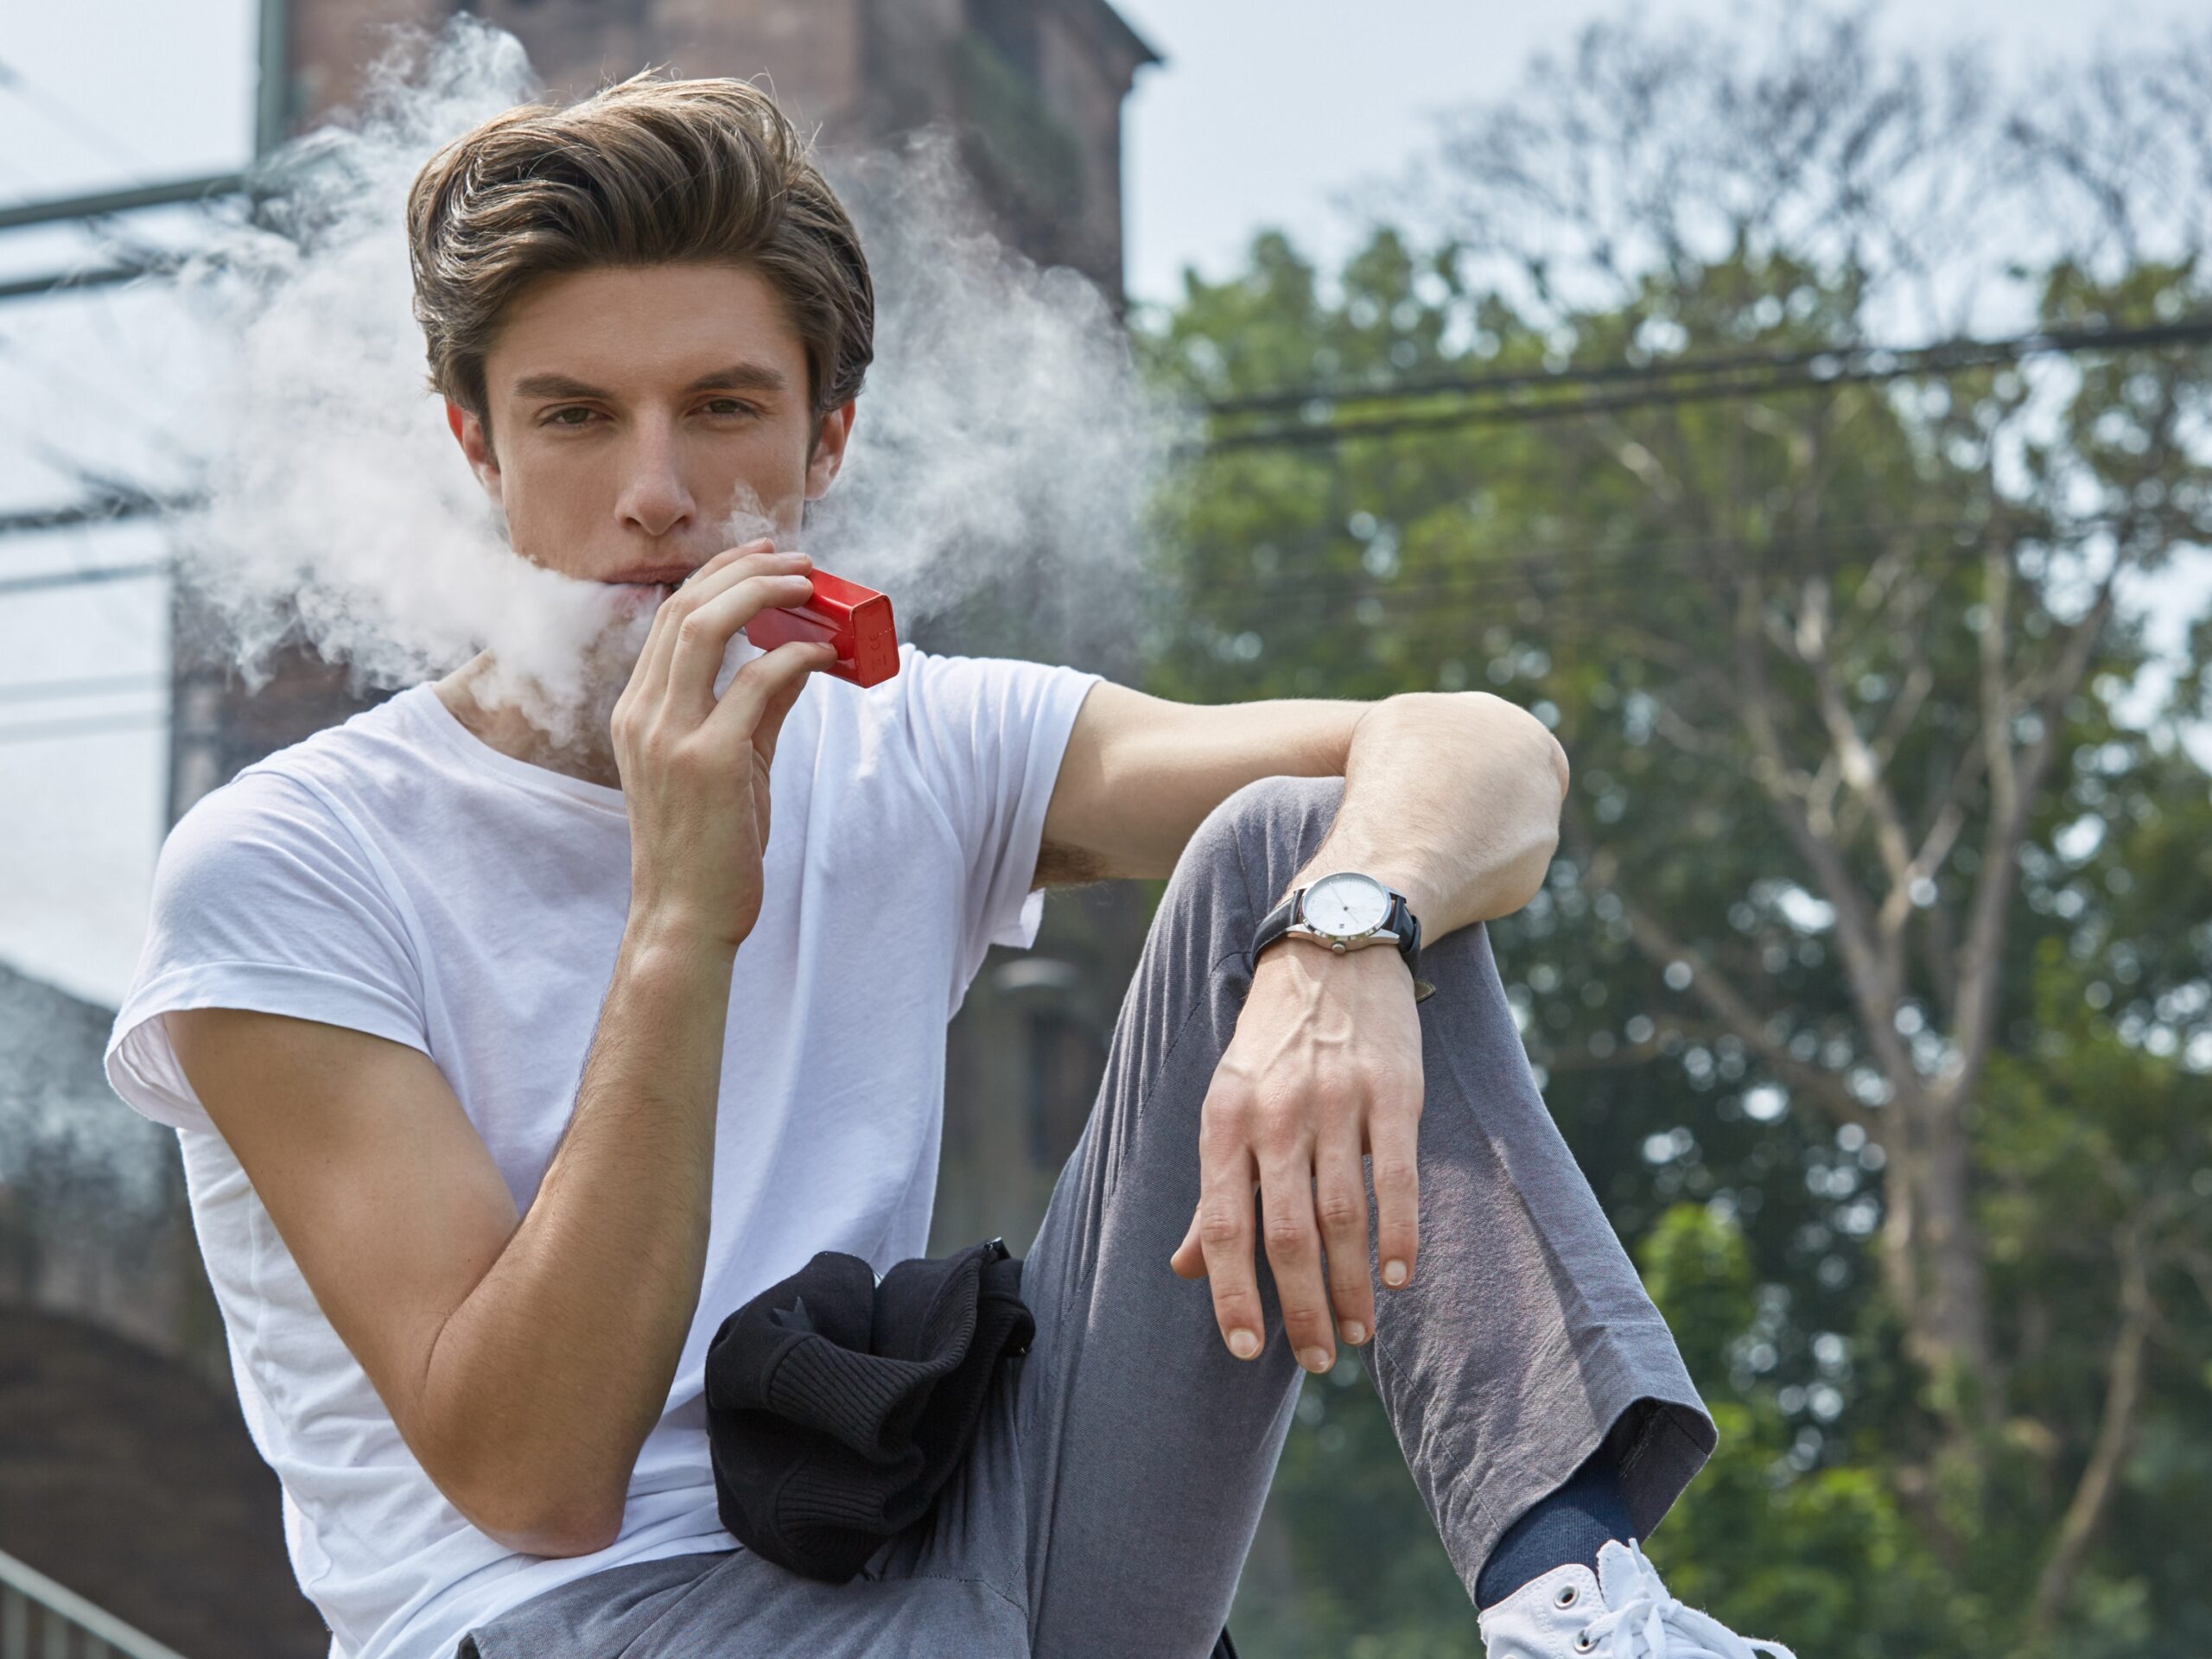 Zigaretten rauchen: Warum Jugendliche nicht vom Tabak lassen